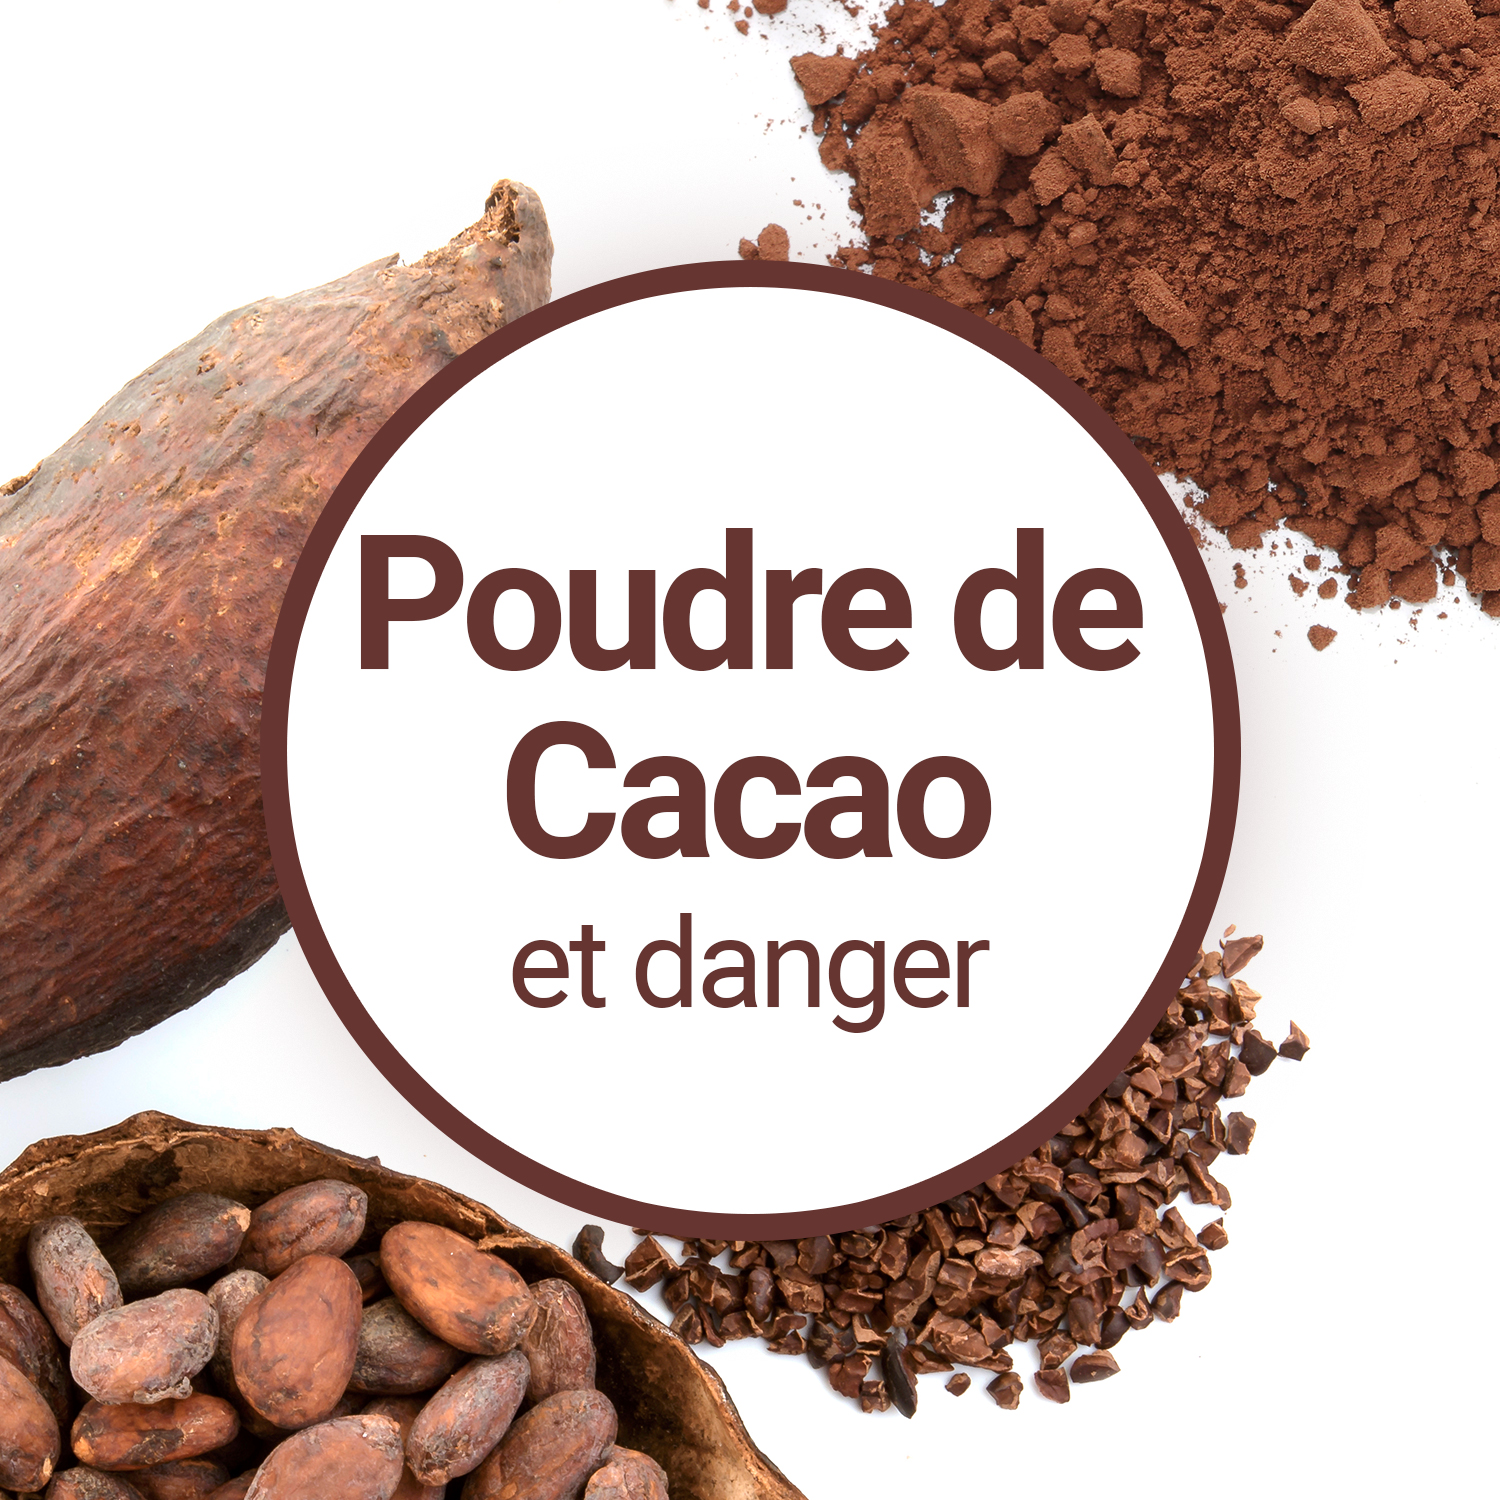 Cacao en poudre : les 2 références à éviter